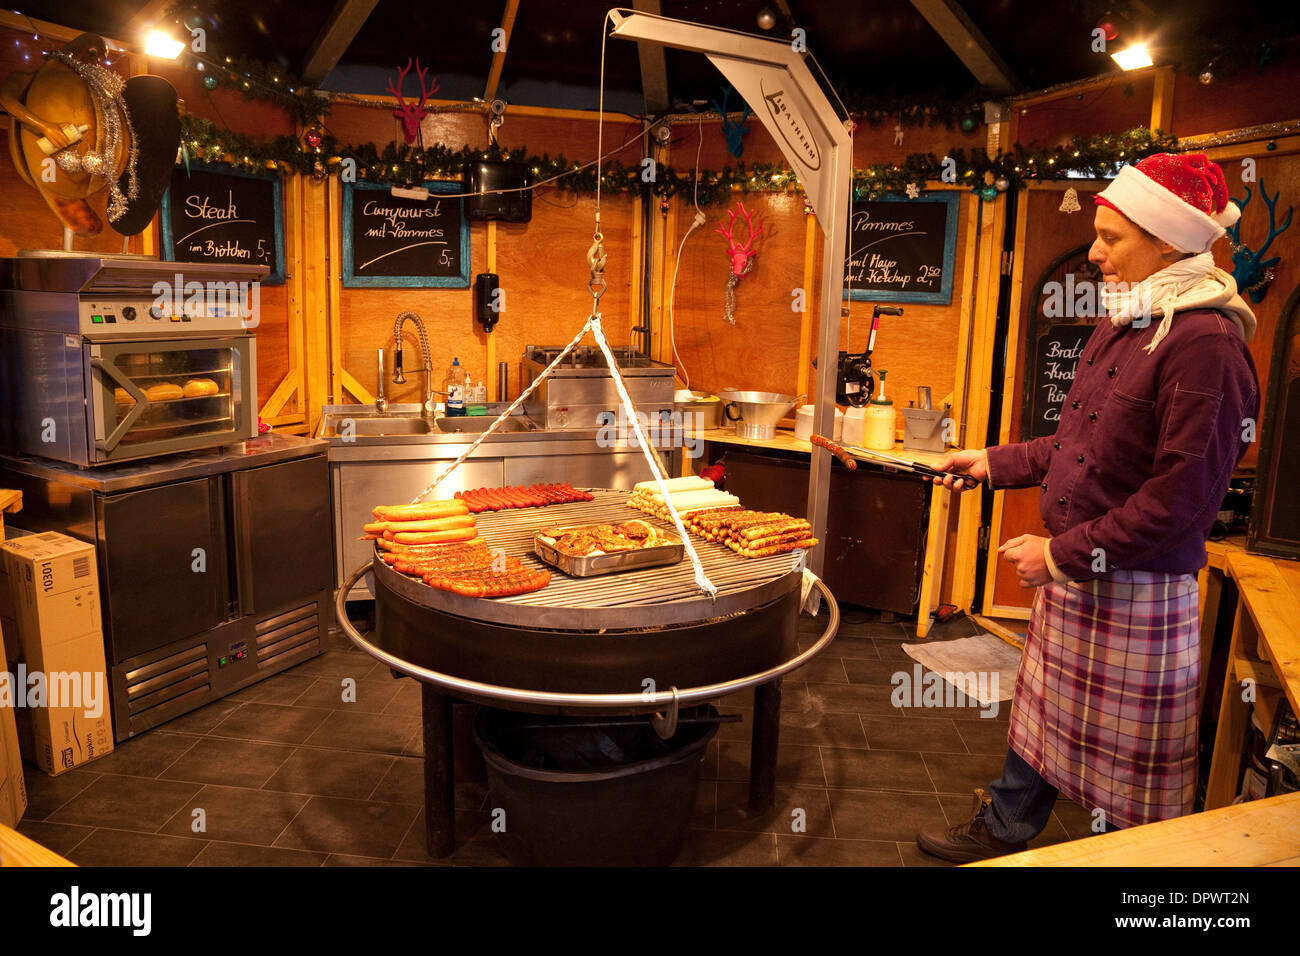 Wurst (Bratwurst) gekocht wird in einem Stall, Kölner Weihnachtsmärkte, Köln (Köln), Deutschland, Europa Stockfoto